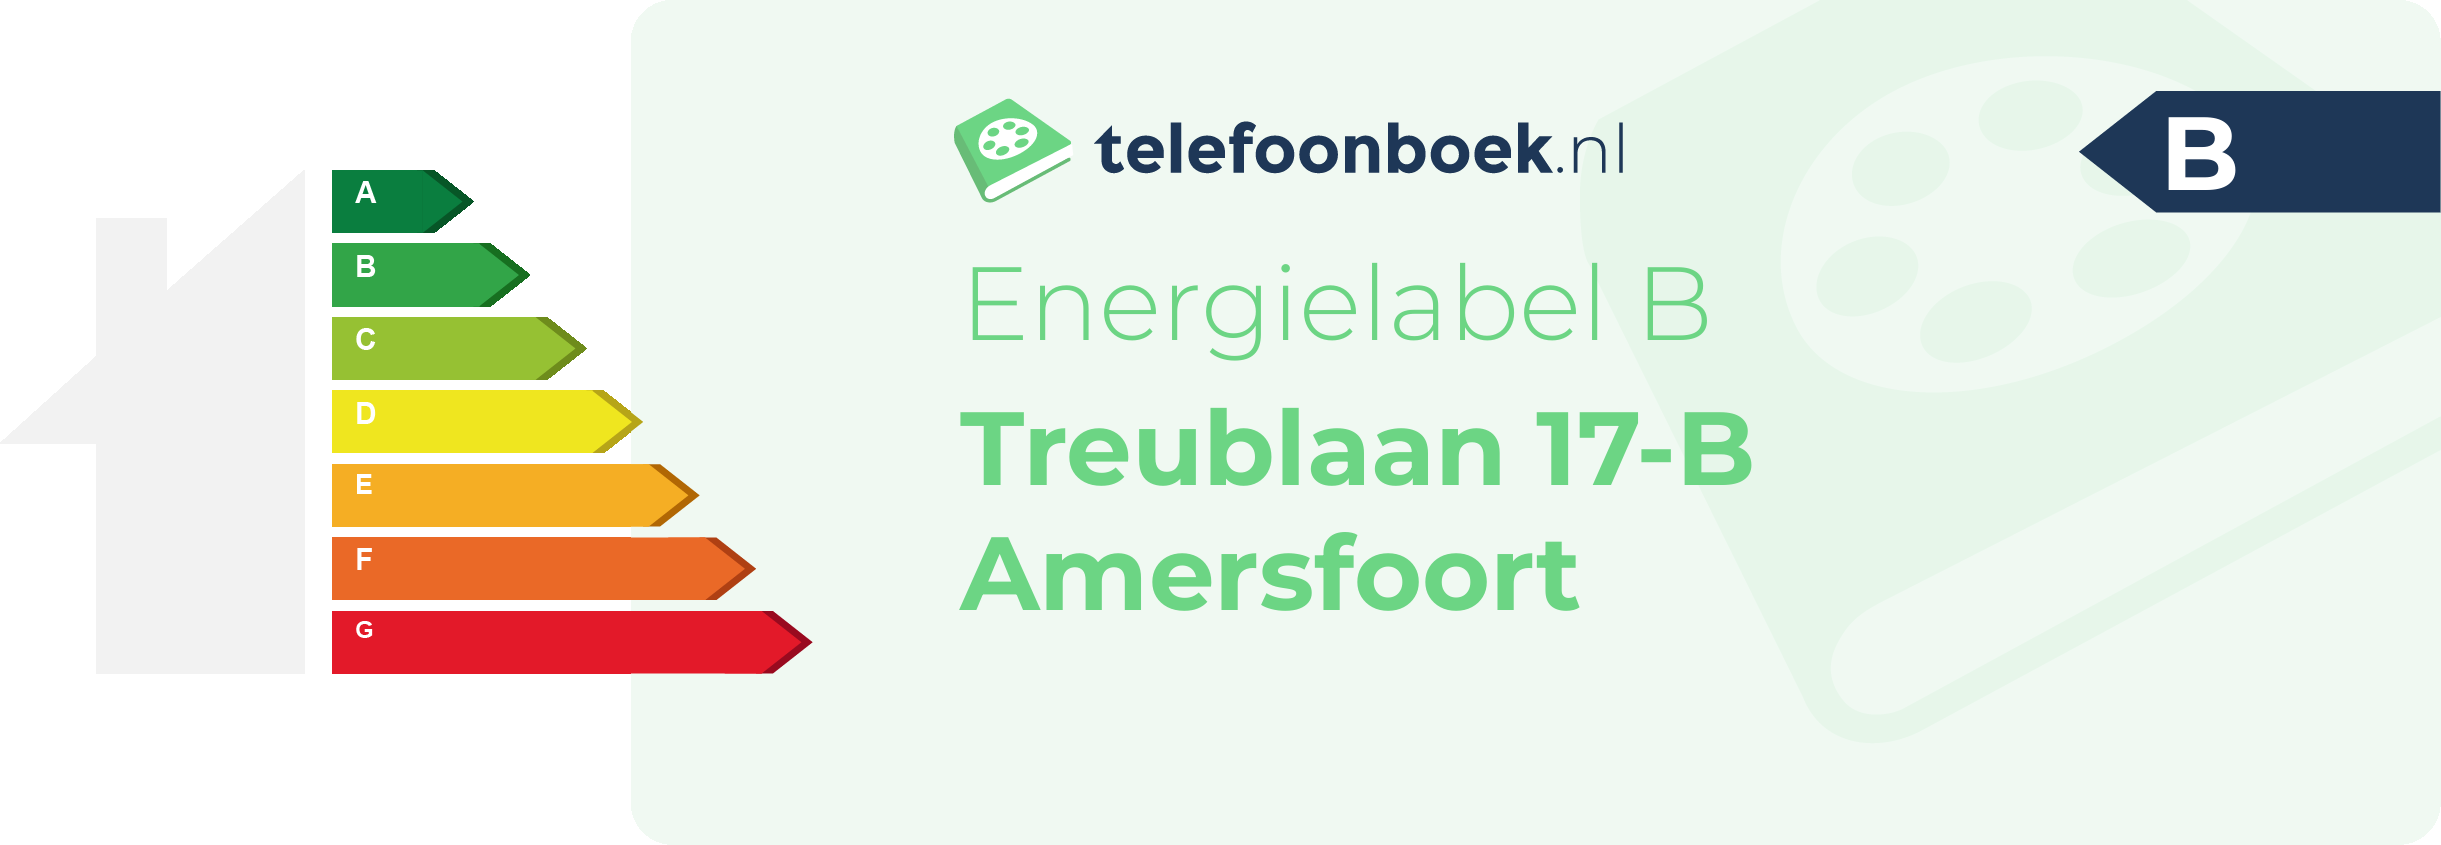 Energielabel Treublaan 17-B Amersfoort